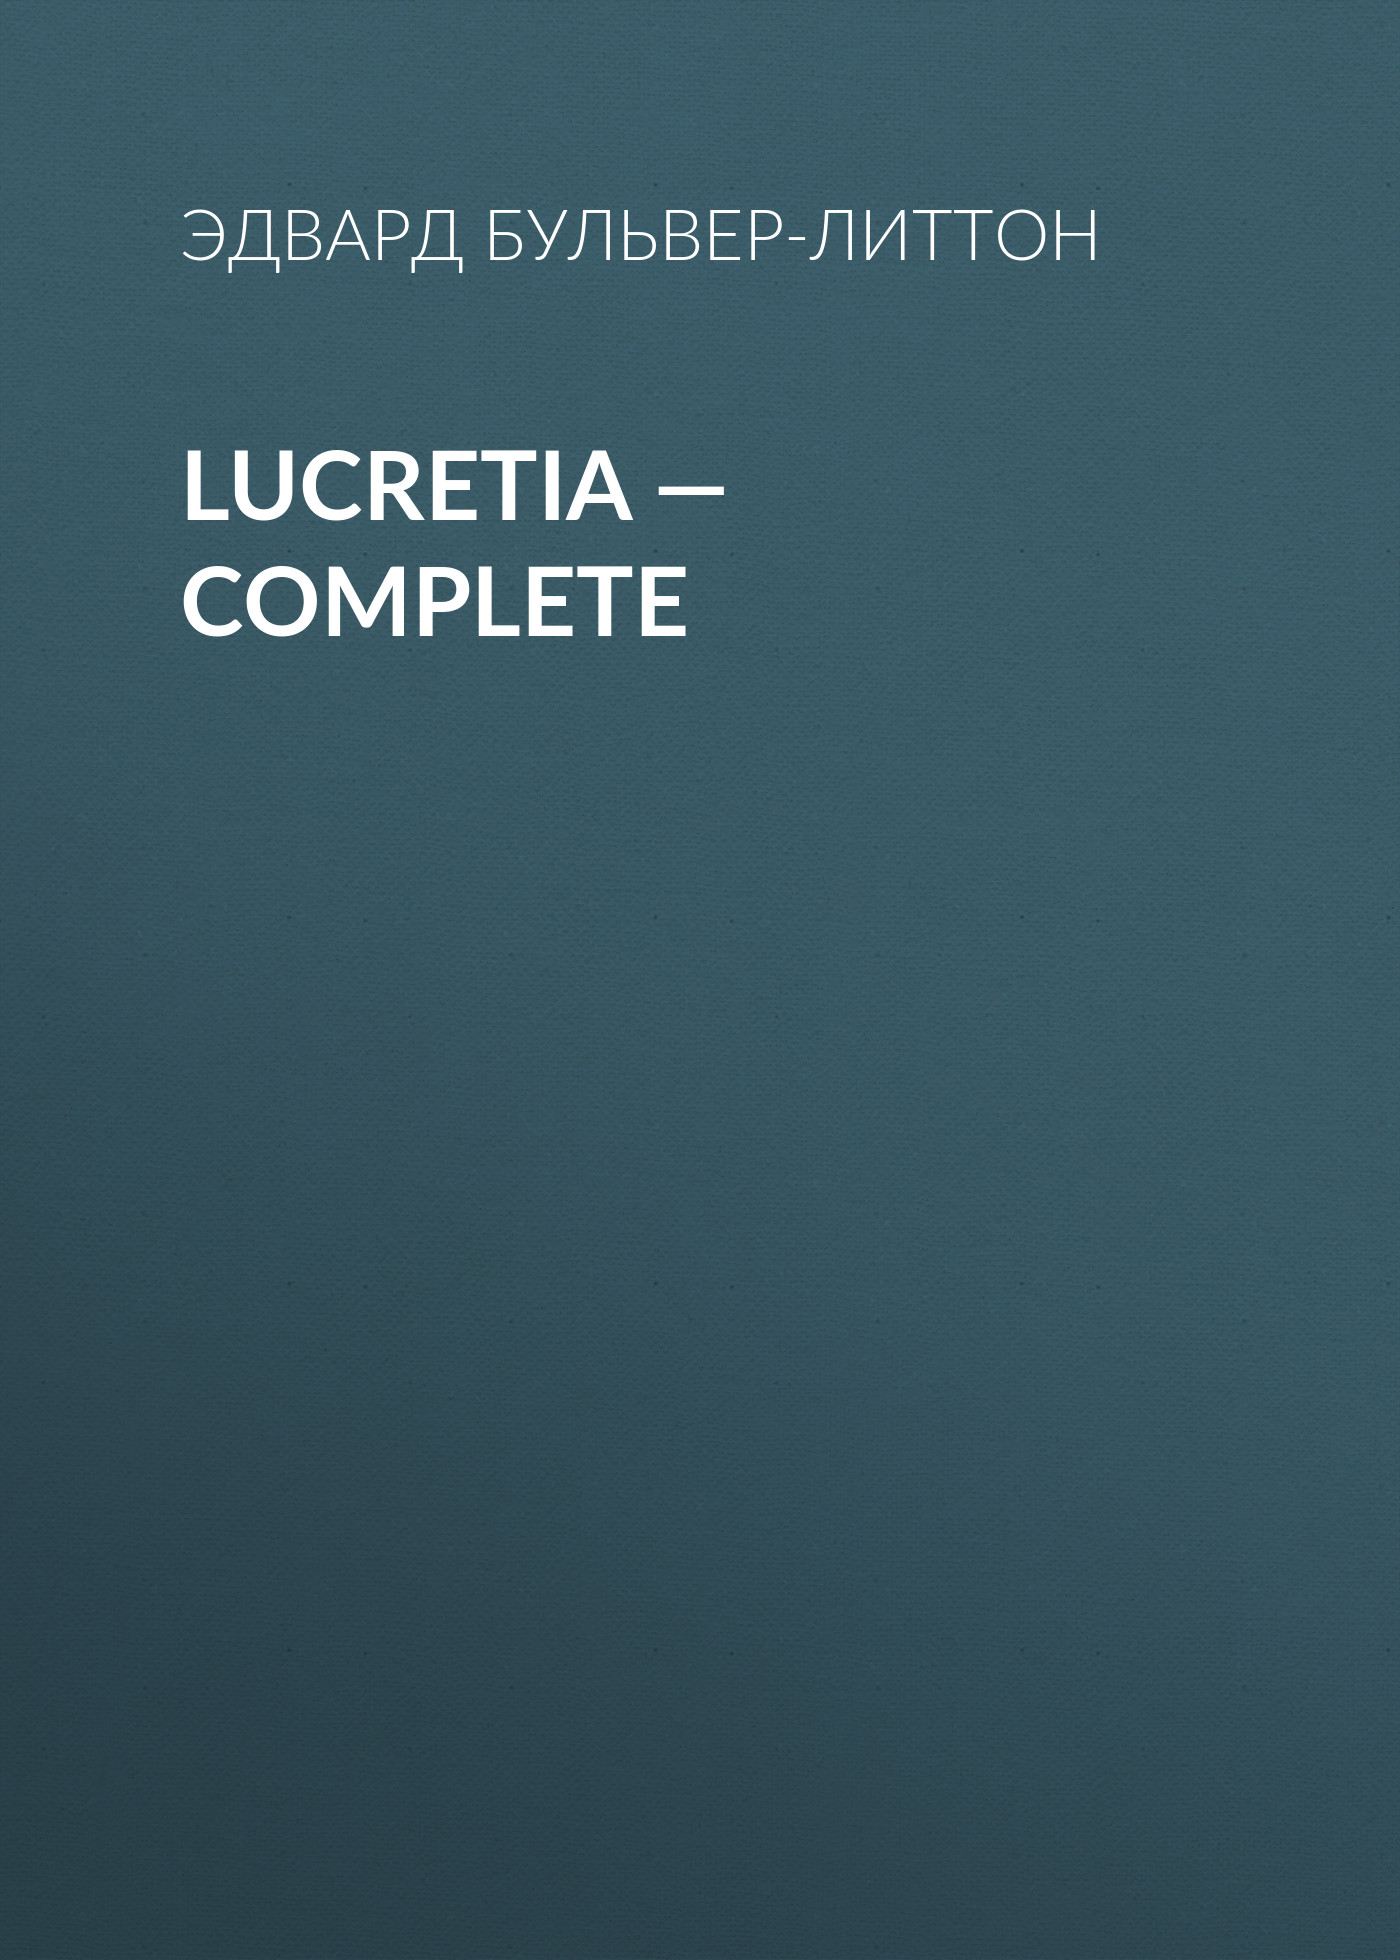 Книга Lucretia – Complete из серии , созданная Эдвард Бульвер-Литтон, может относится к жанру Литература 19 века, Зарубежные детективы. Стоимость электронной книги Lucretia – Complete с идентификатором 35009017 составляет 0 руб.